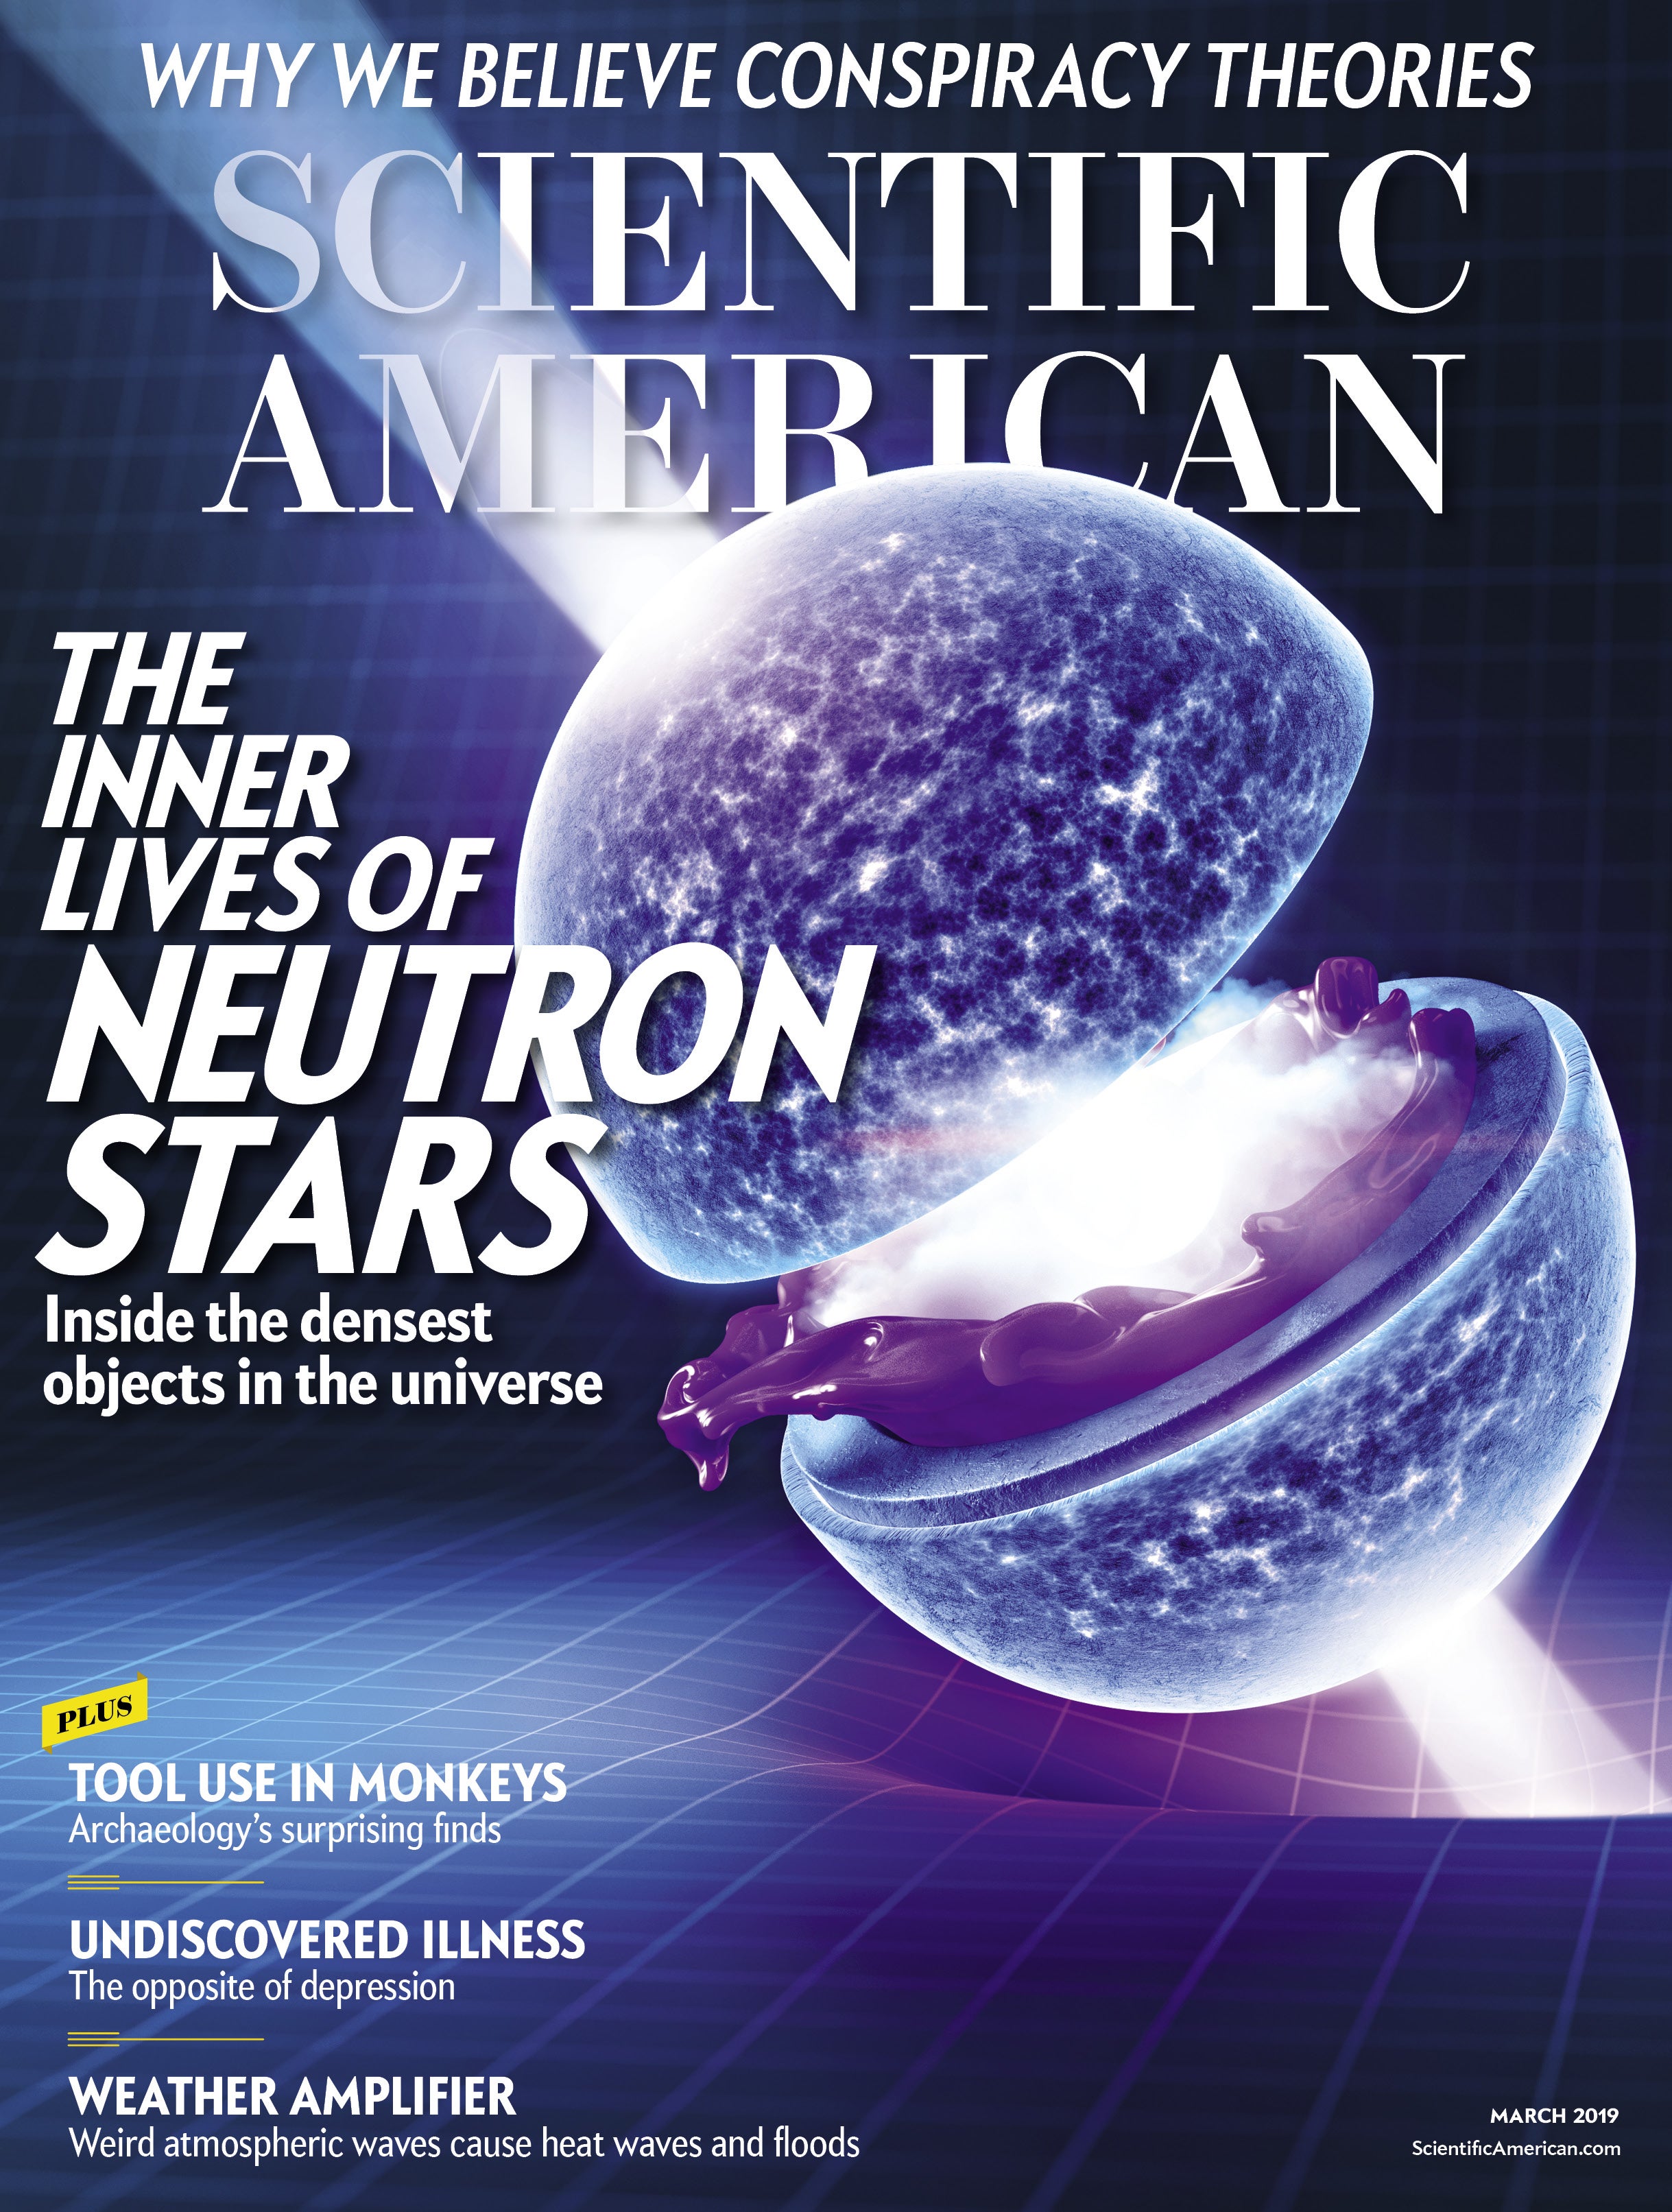 Scientific American Volume 320, Issue 3